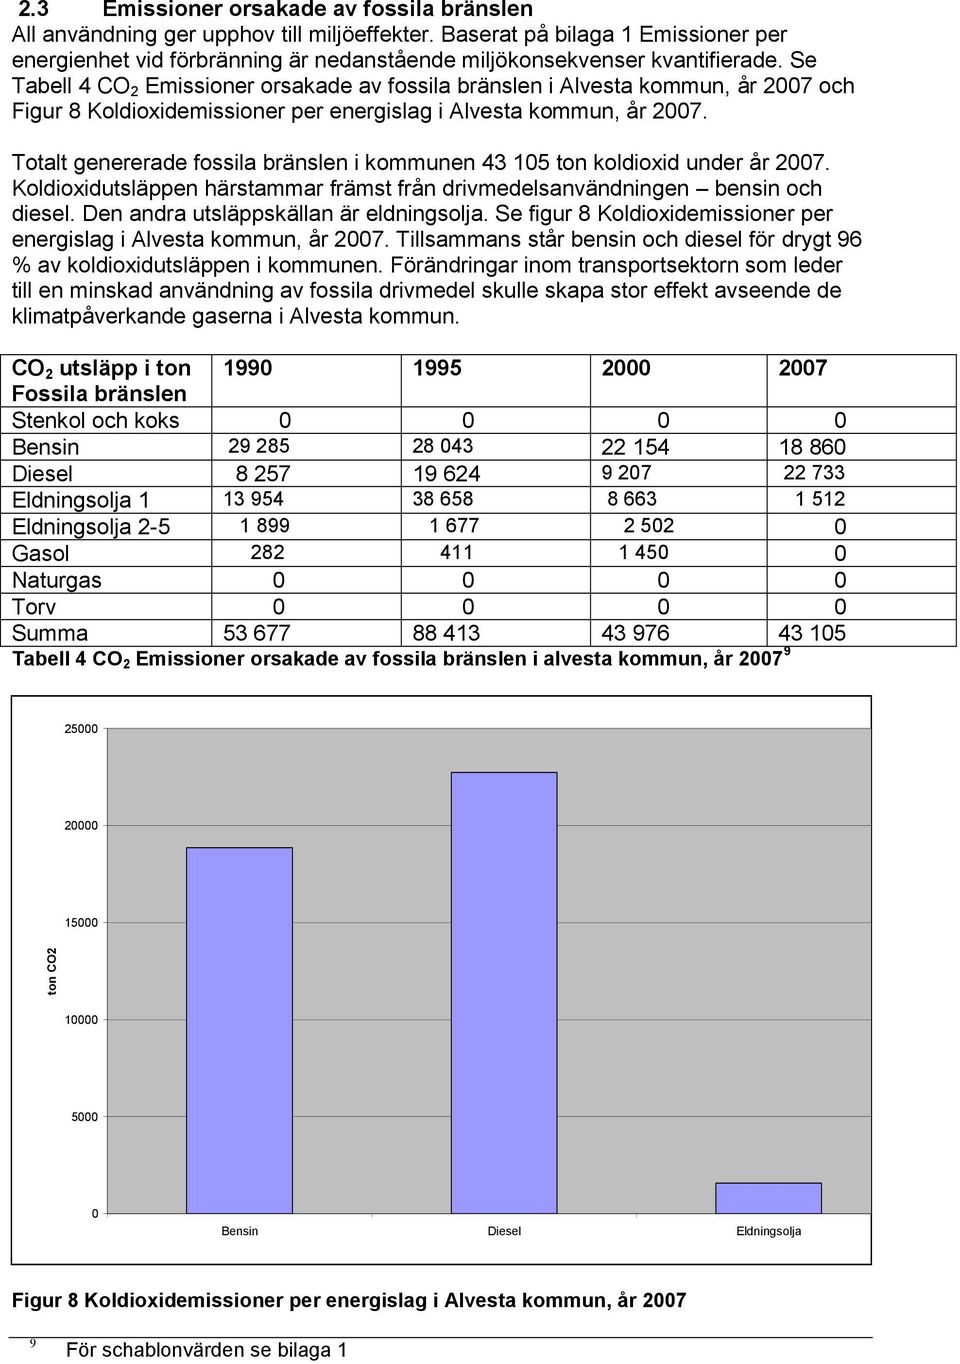 Se Tabell 4 CO 2 Emissioner orsakade av fossila bränslen i Alvesta kommun, år 2007 och Figur 8 Koldioxidemissioner per energislag i Alvesta kommun, år 2007.